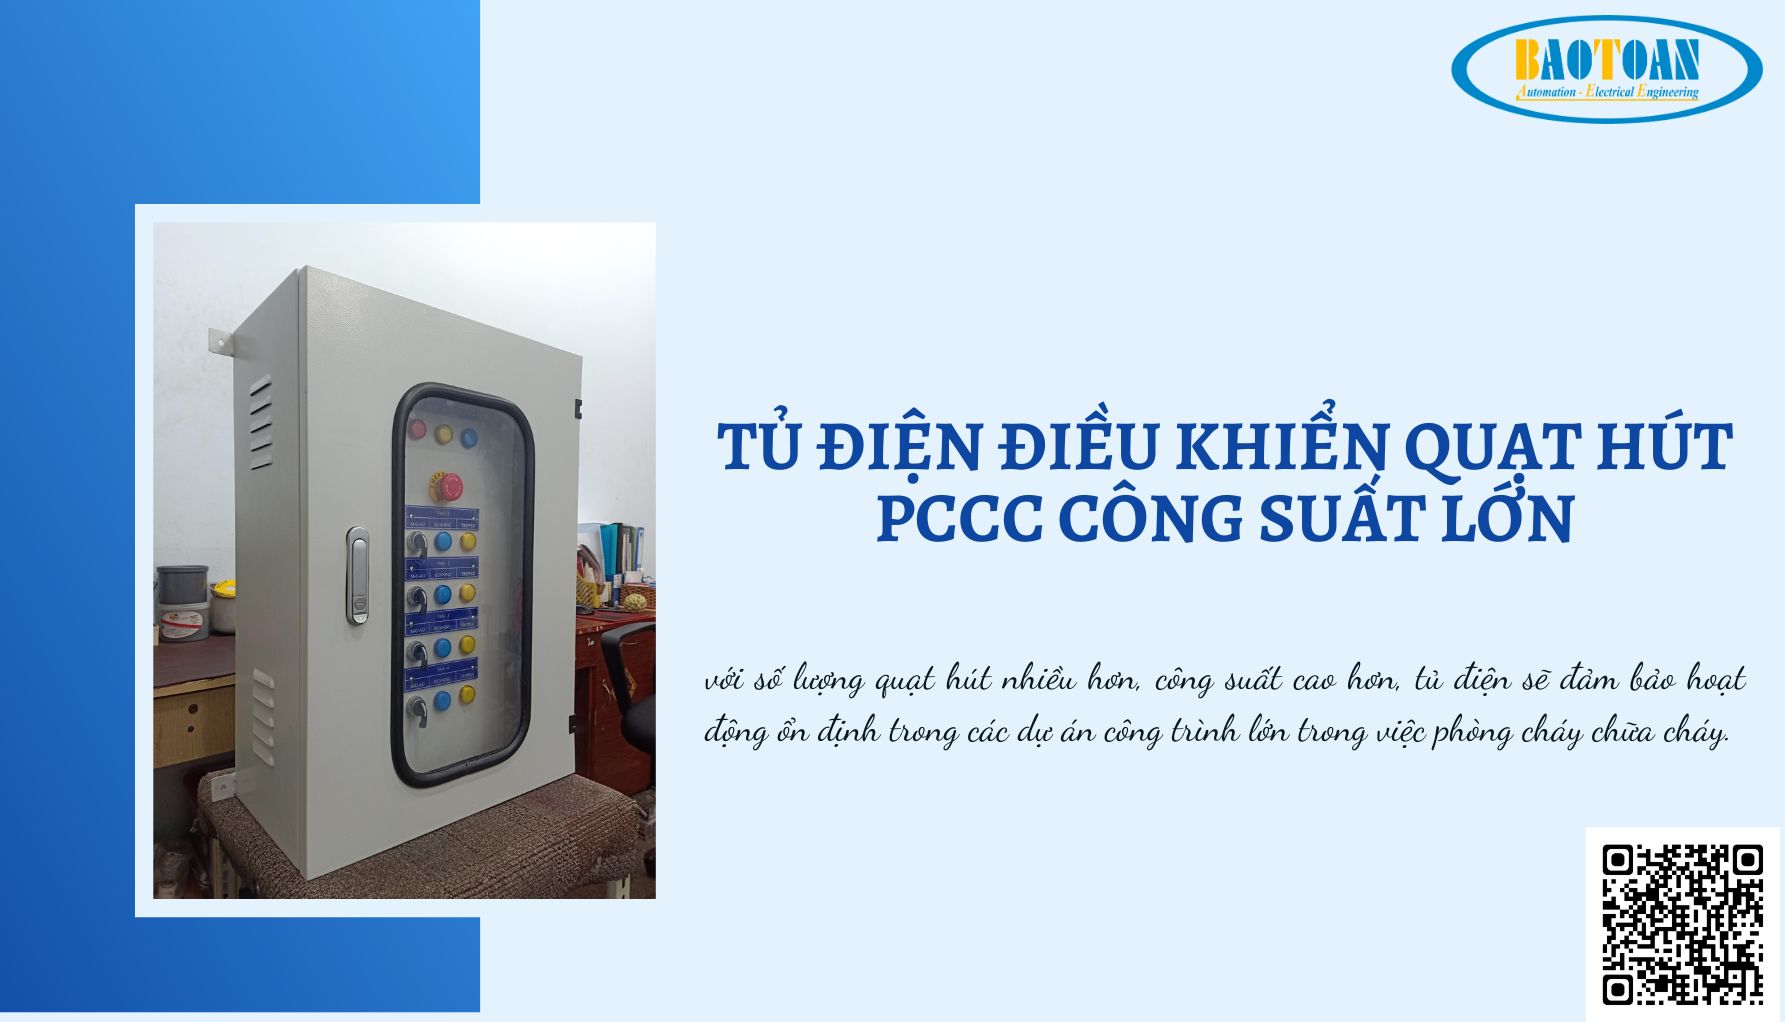 Tủ điện điều khiển quạt hút PCCC công suât lớn tại BaoToanTech